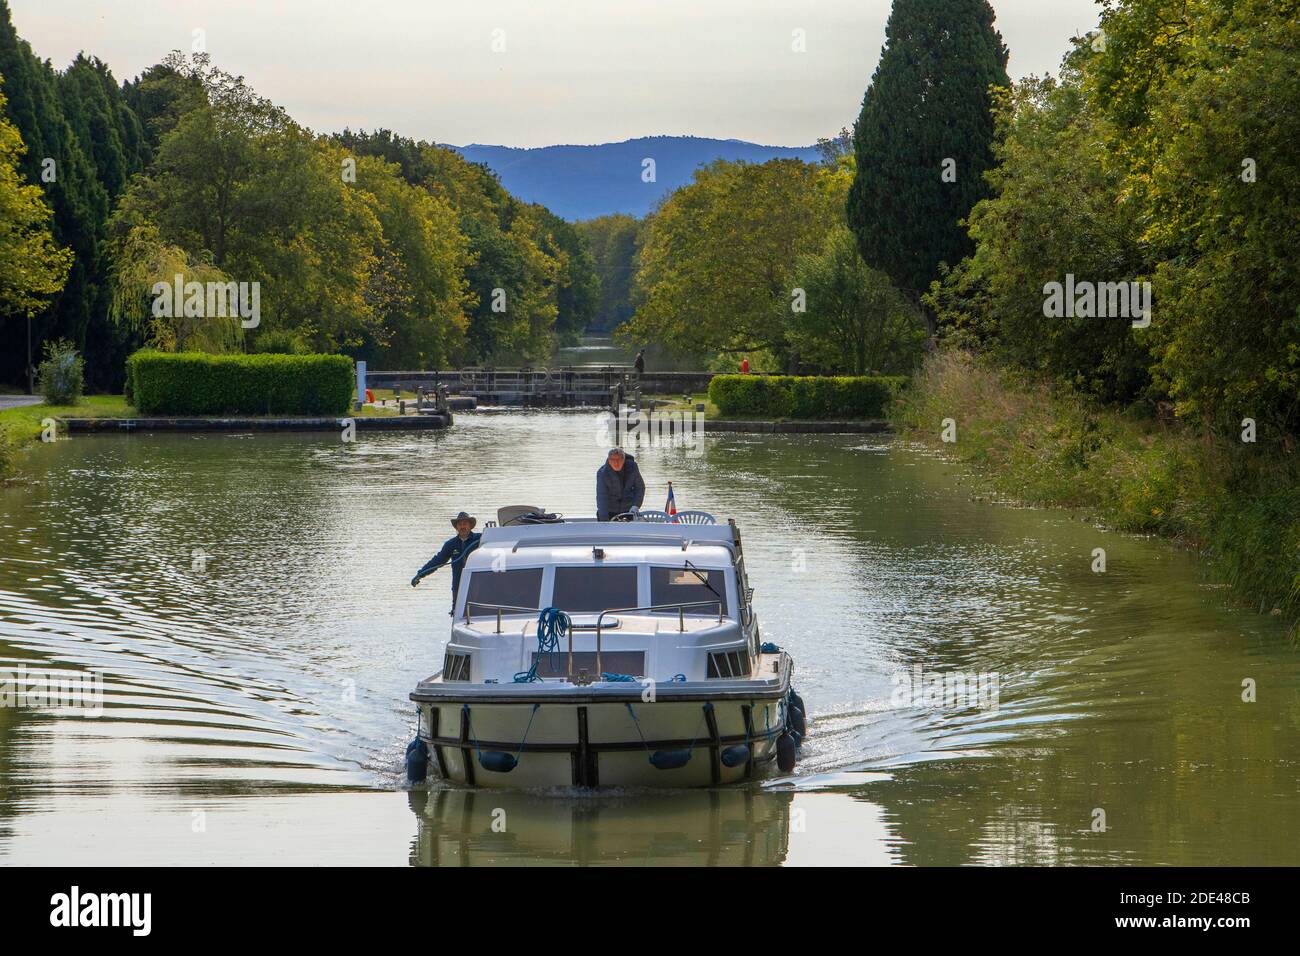 Le Canal du midi, près de Carcassonne, département français de l'Aude, région occitanie, Languedoc-Rousillon France. Bateaux amarrés sur le canal bordé d'arbres. T Banque D'Images